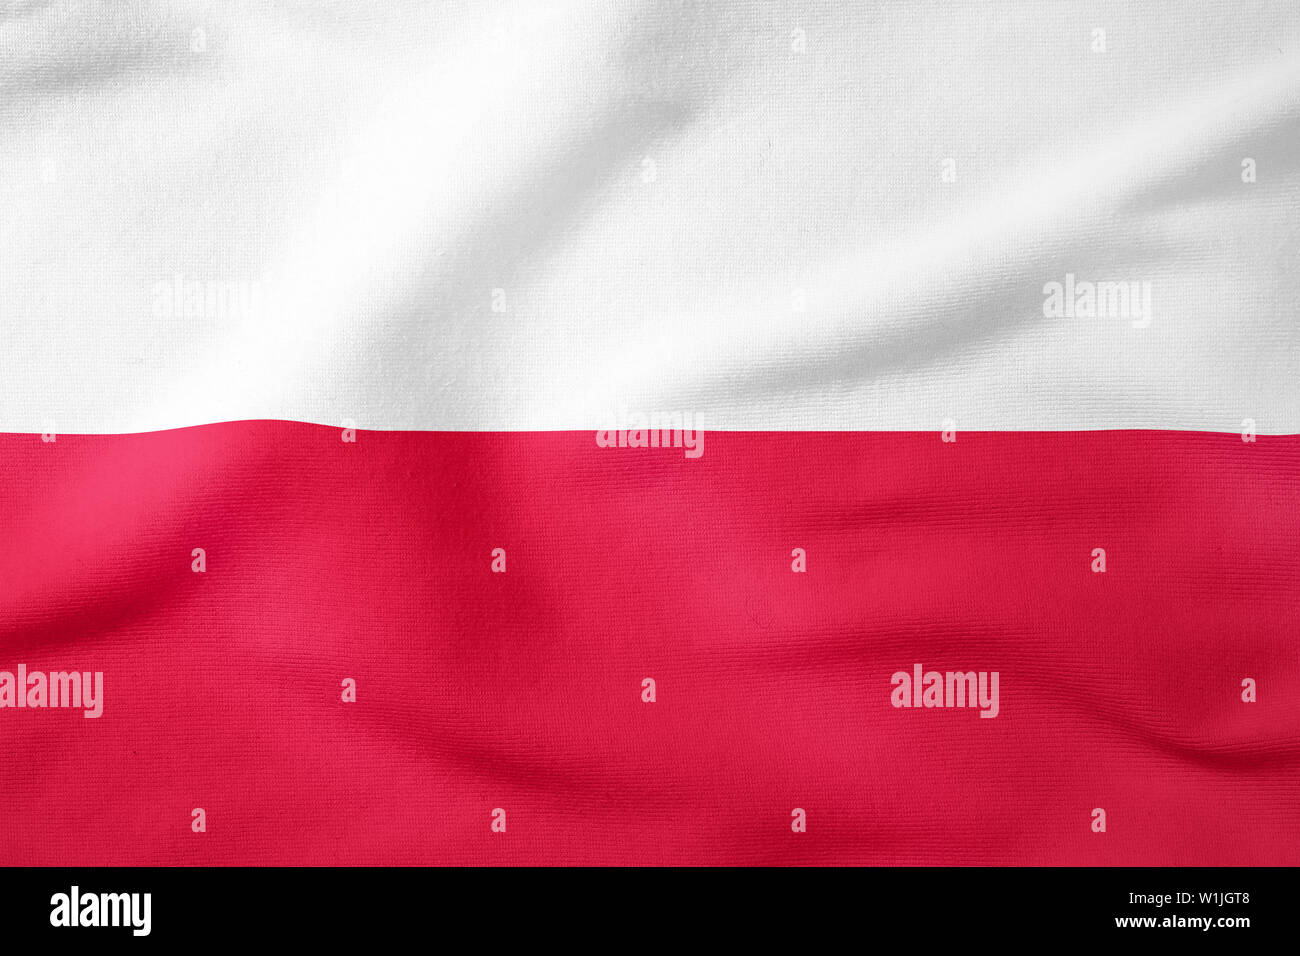 Drapeau national de la Pologne - Forme rectangulaire symbole patriotique Banque D'Images